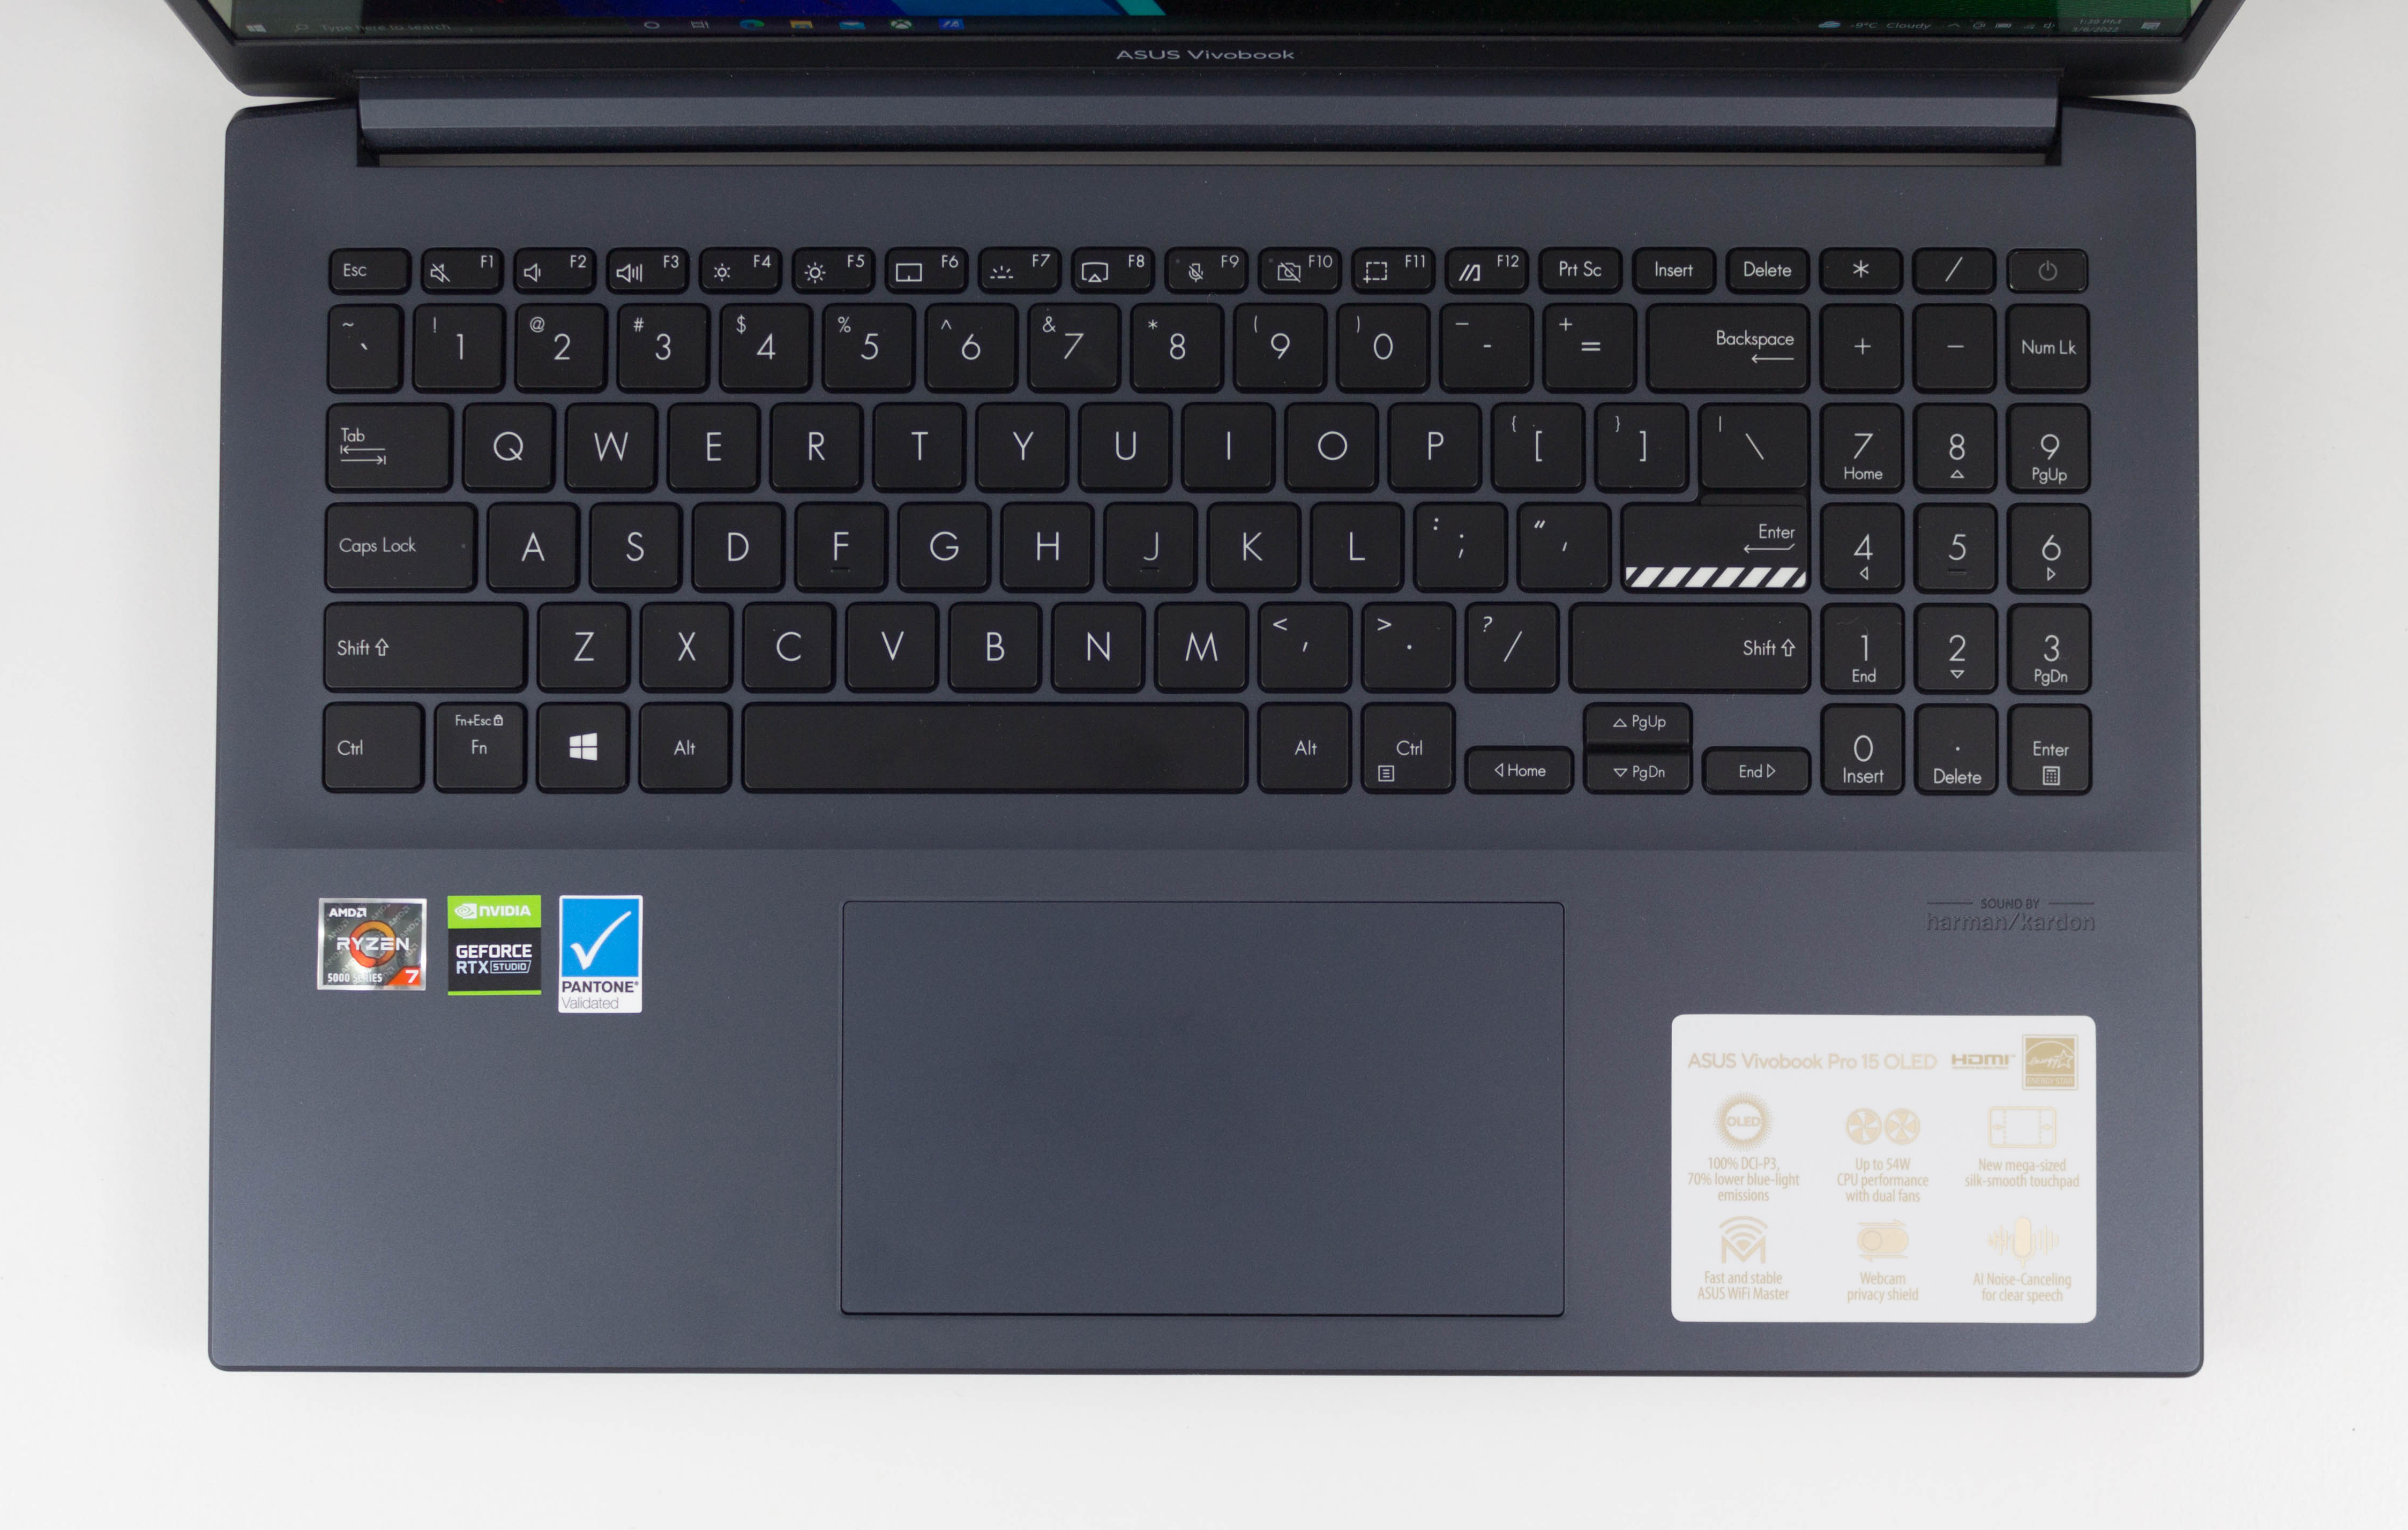 Asus VivoBook Pro 15 (i7-7700HQ, GTX 1050) Laptop Review -   Reviews